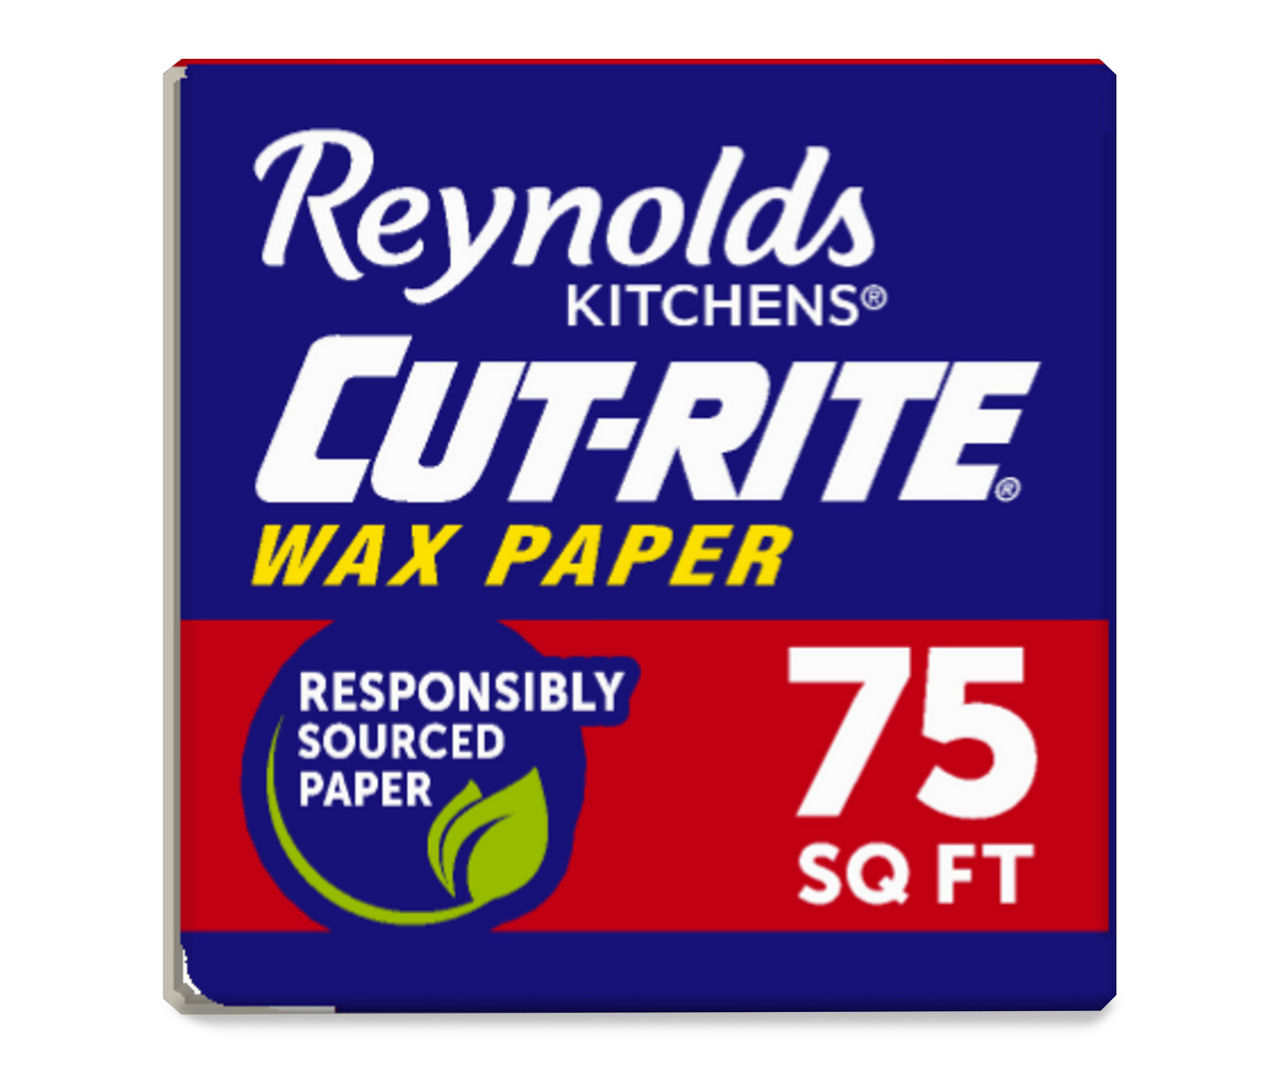 Reynolds Kitchens® Cut-Rite® Wax Paper, 75 sq ft - Kroger